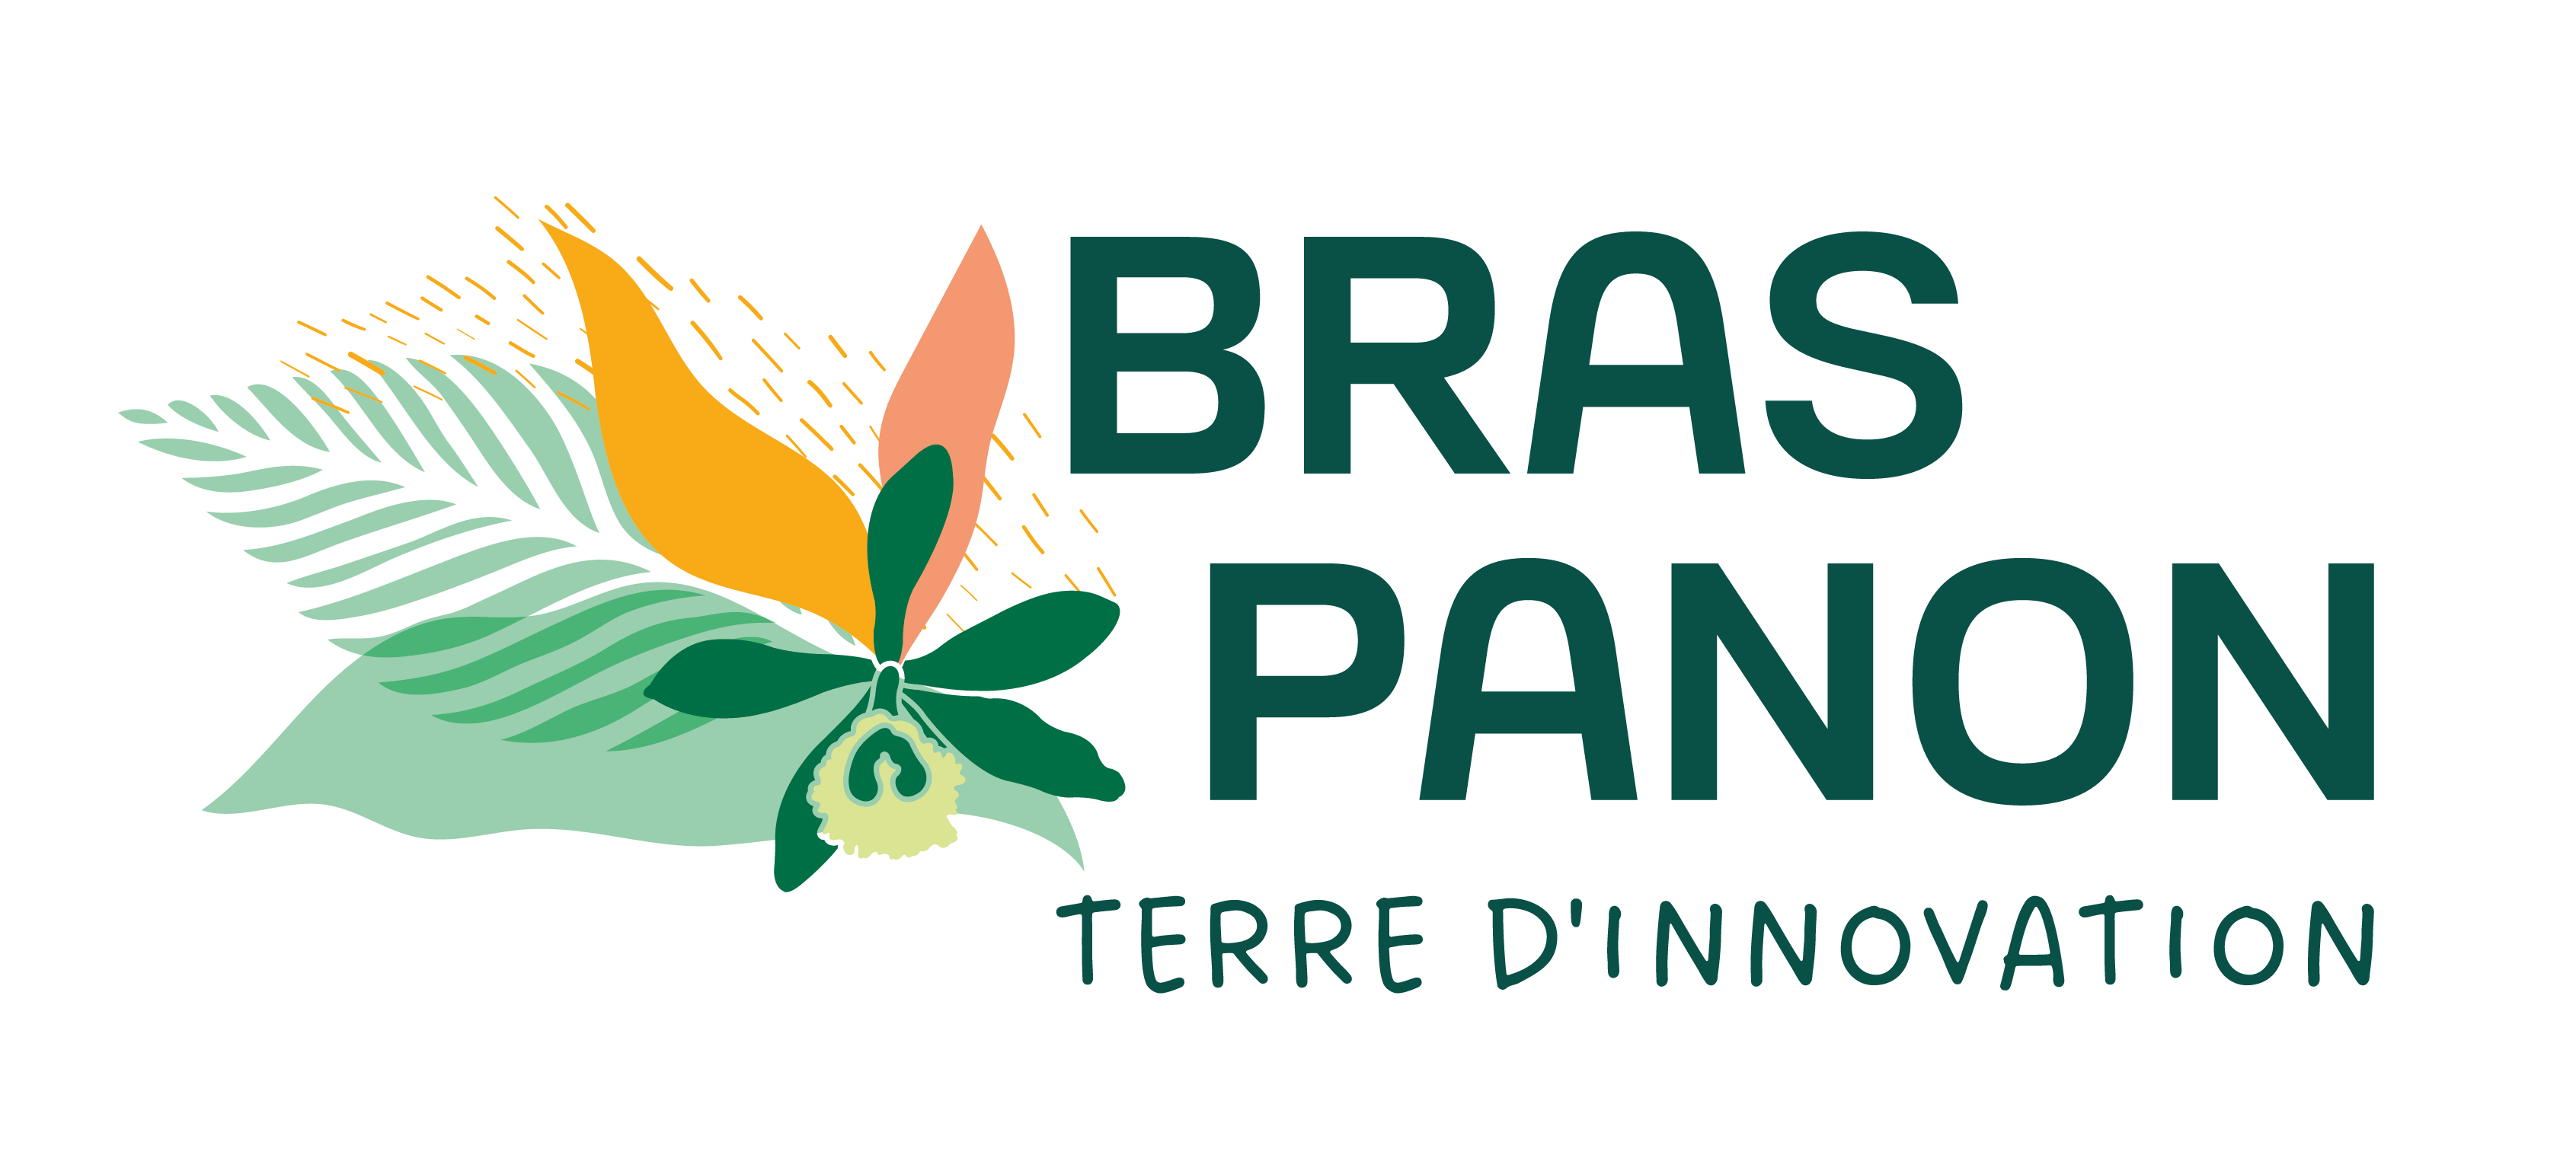 Ville de Bras-Panon